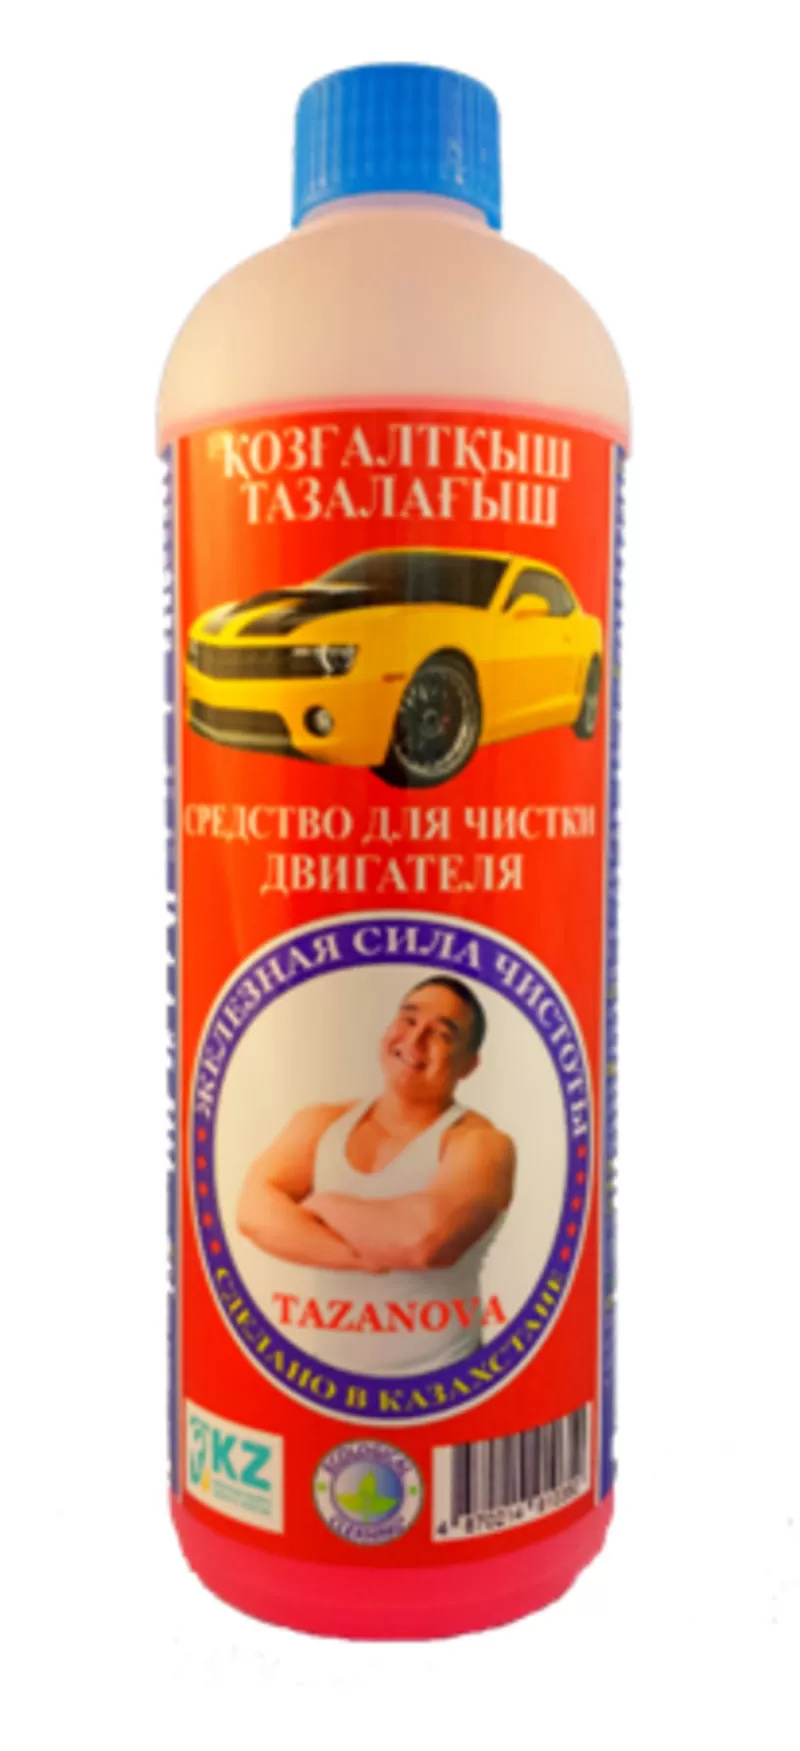 Автошампуни и автокосметика в Алматы  2